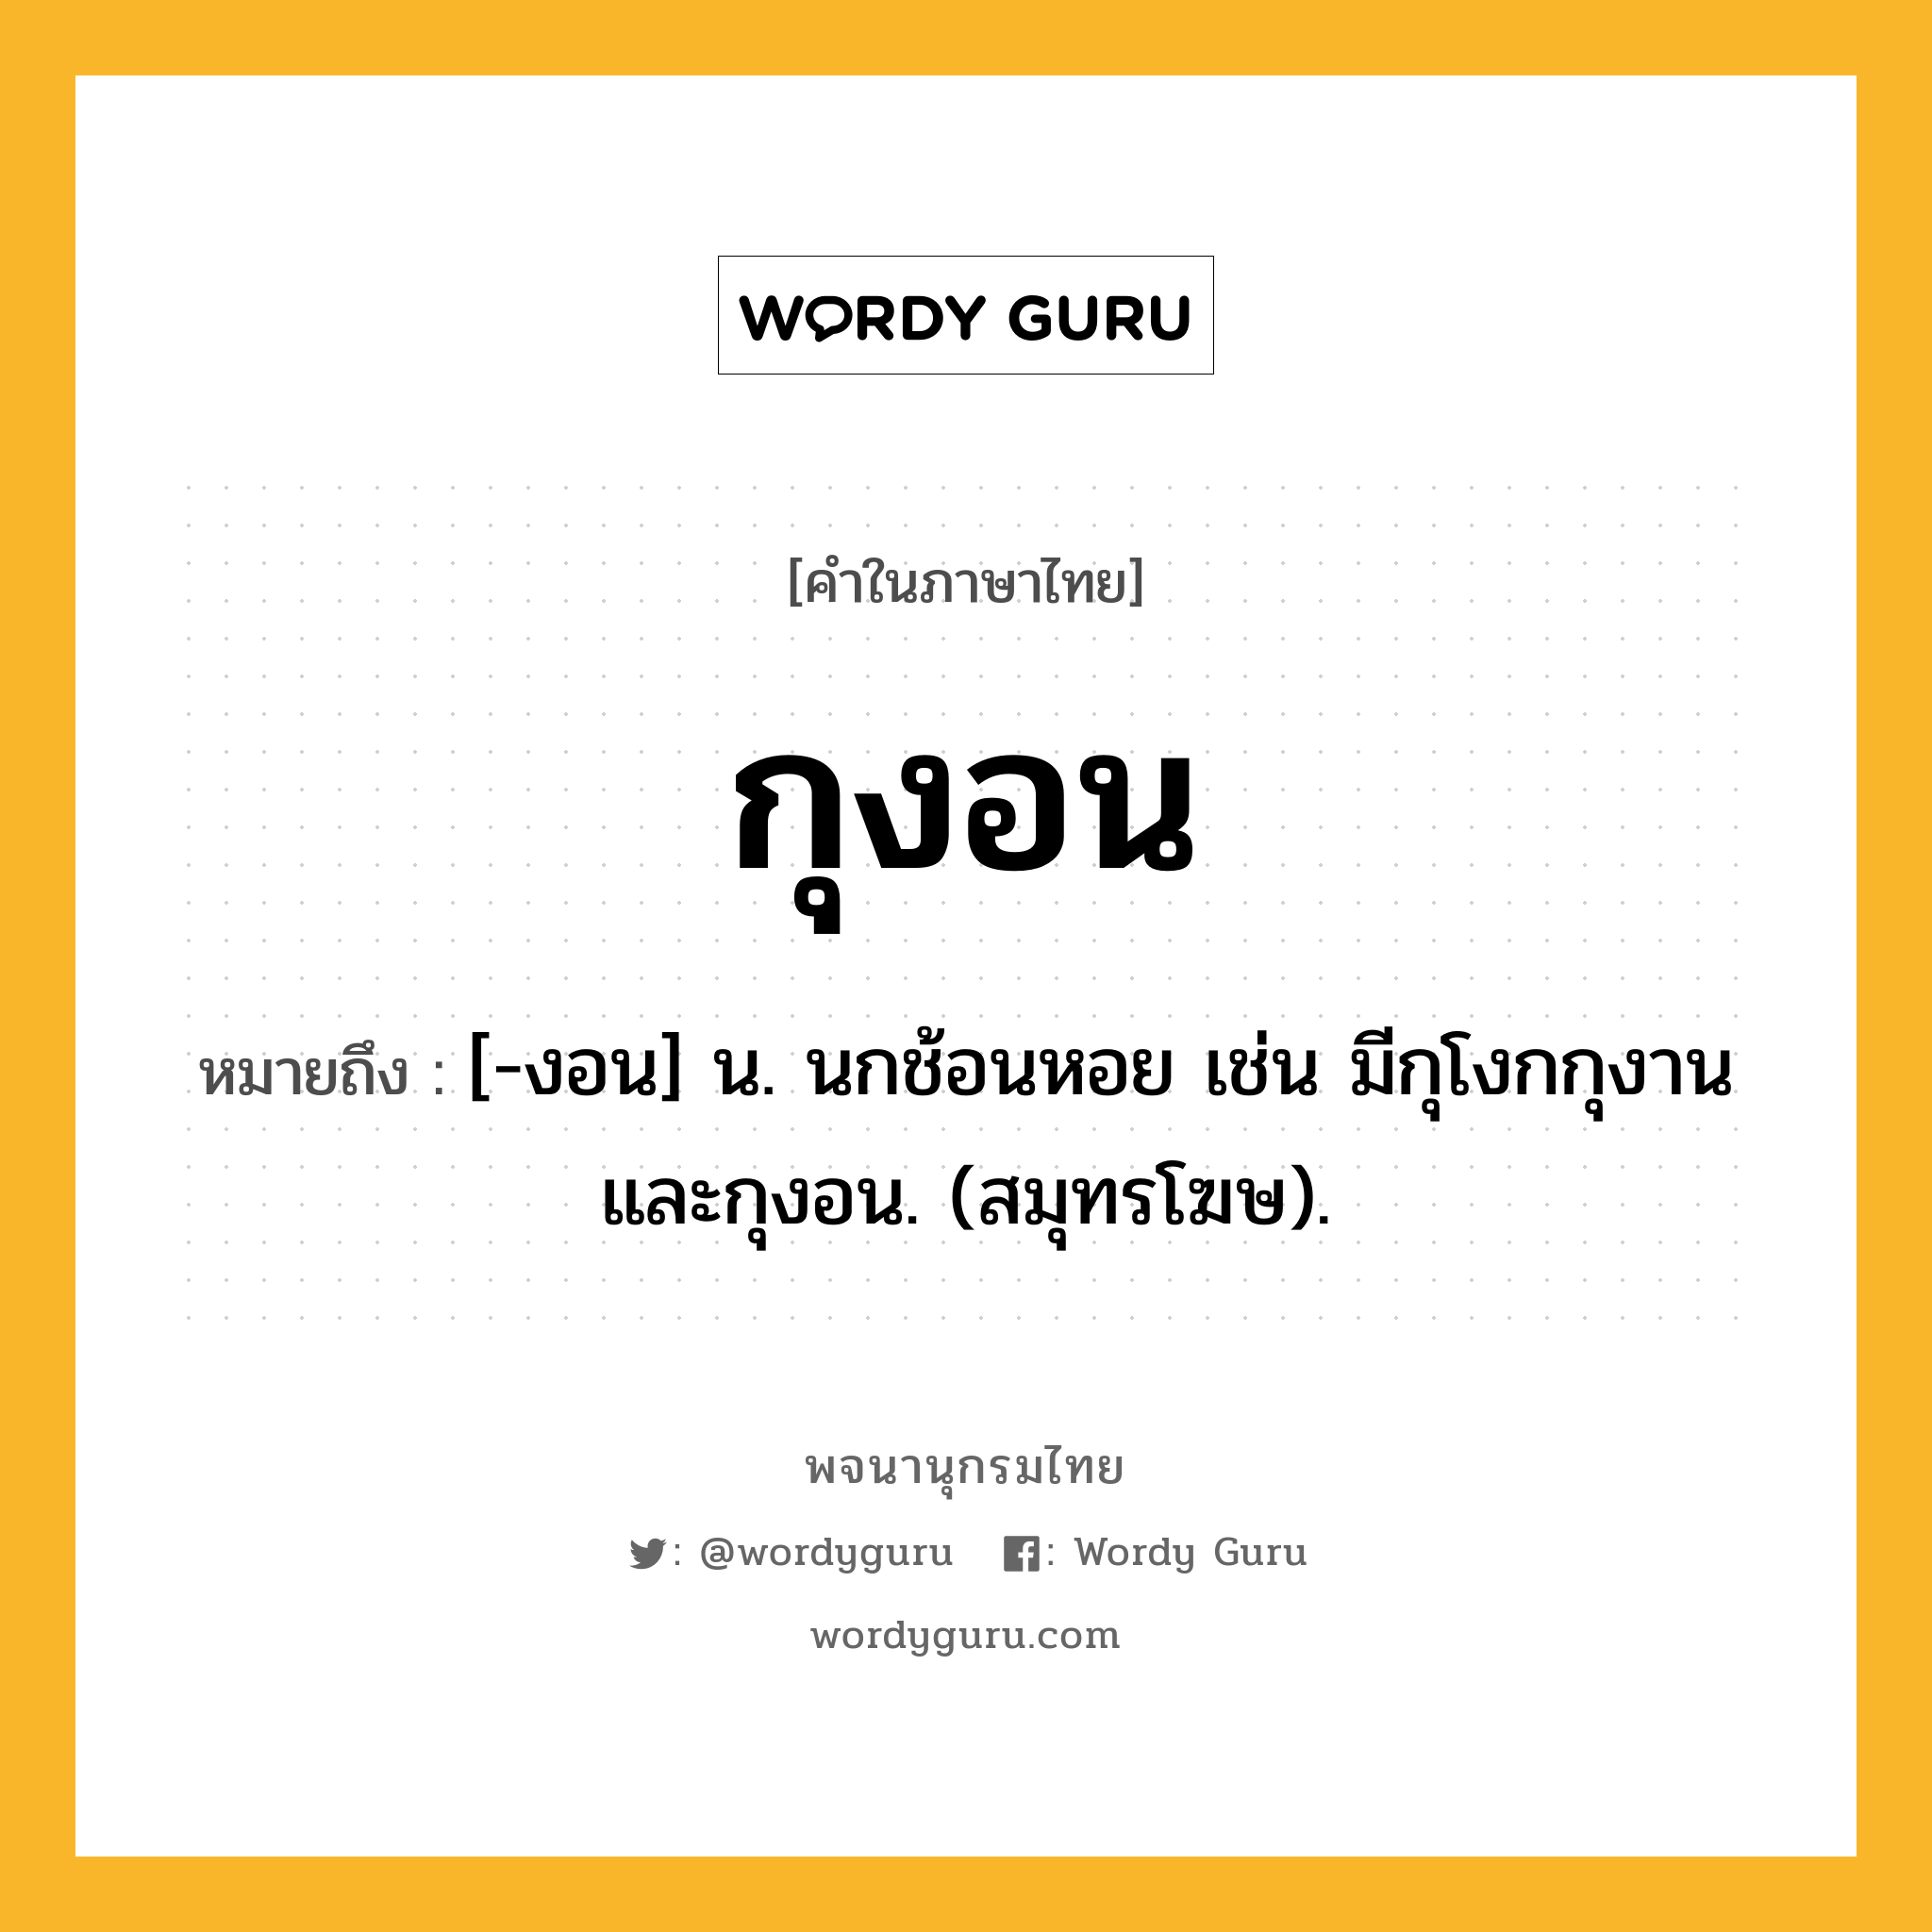 กุงอน ความหมาย หมายถึงอะไร?, คำในภาษาไทย กุงอน หมายถึง [-งอน] น. นกช้อนหอย เช่น มีกุโงกกุงานและกุงอน. (สมุทรโฆษ).